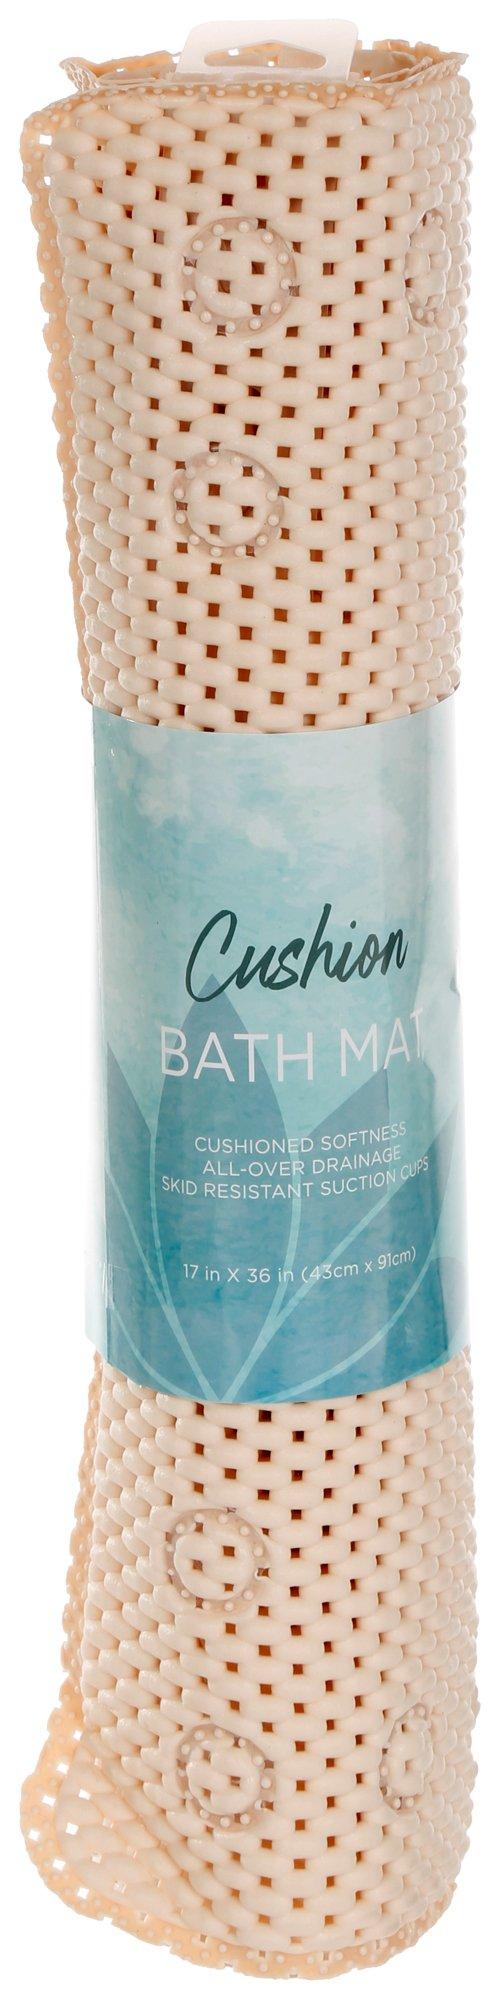 Cushioned Bath Mat